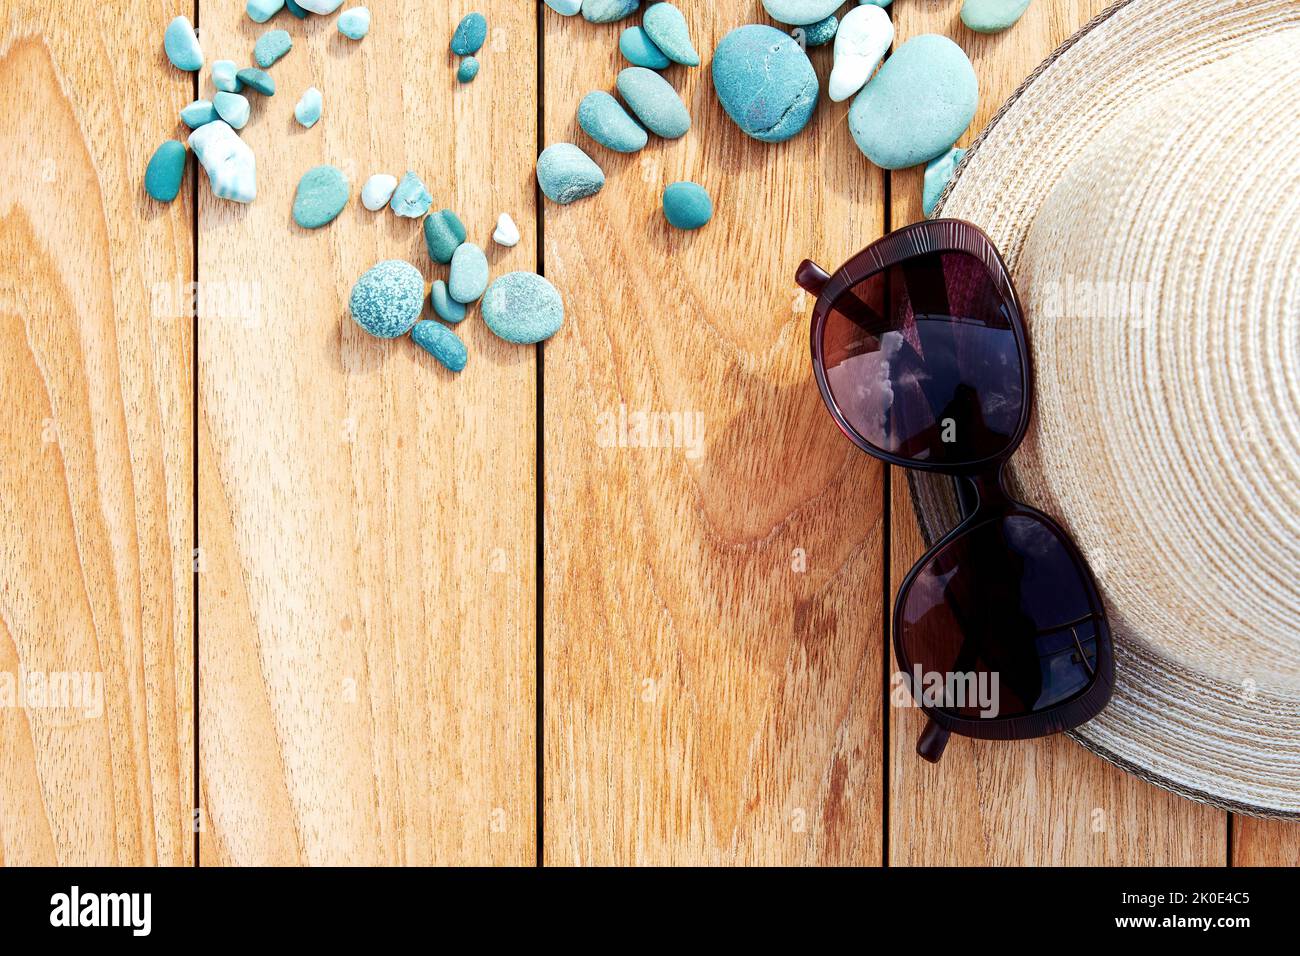 Plat avec chapeau de plage, lunettes de soleil et galets bleus sur la table en bois. Activités de loisirs en mer et accessoires de plage Banque D'Images